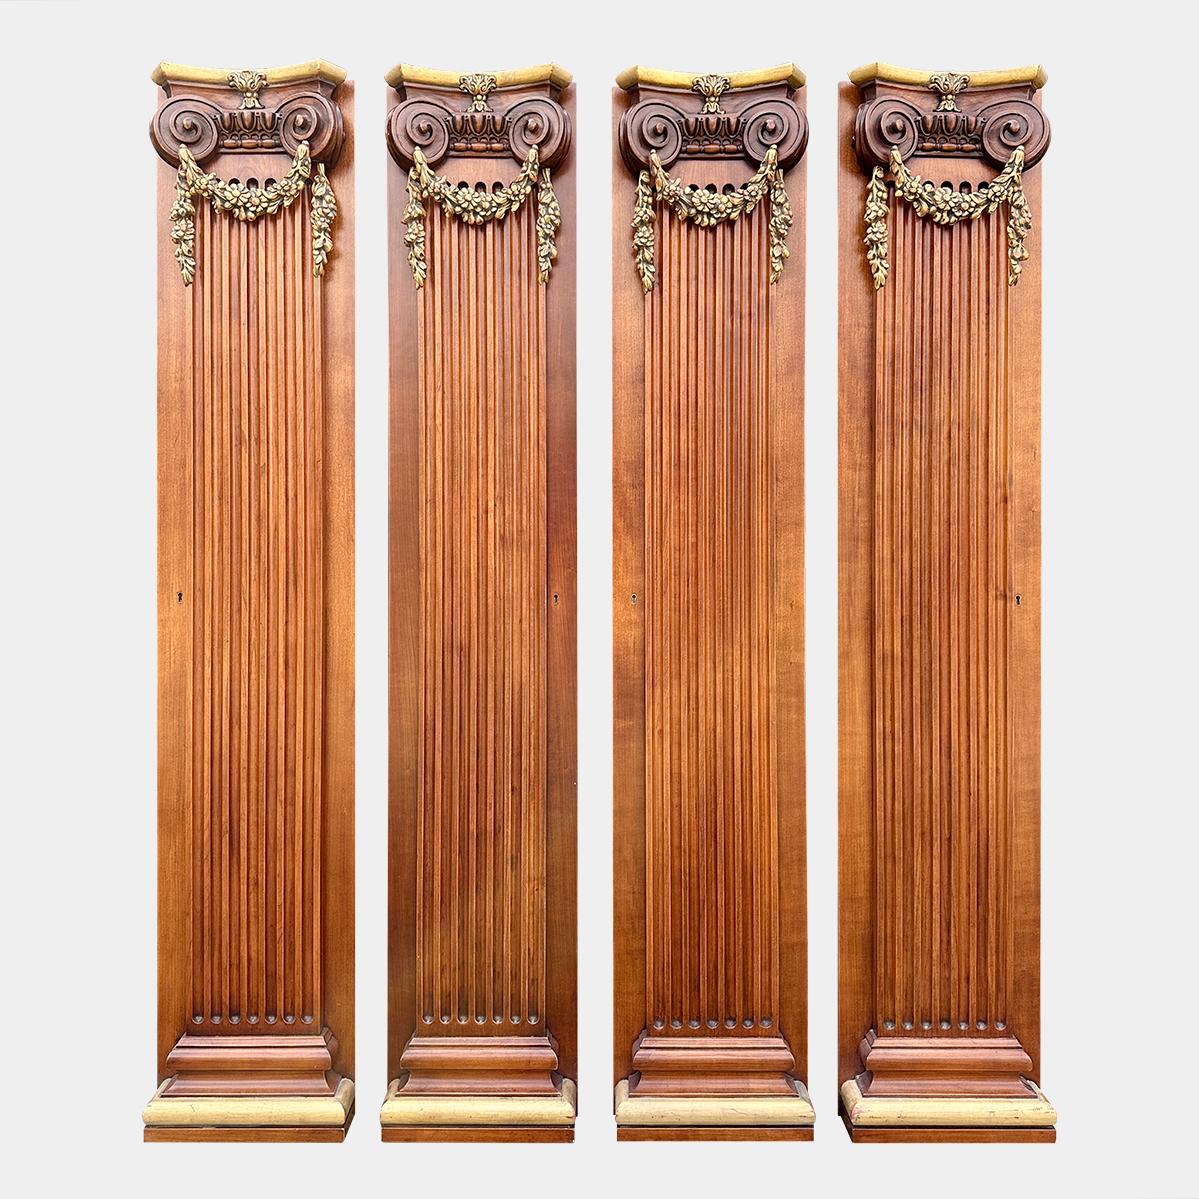 Un ensemble de 4 pilastres récupérés avec des chapiteaux en bois sculpté et des socles dorés. 
Les pilastres cannelés avec des  des draperies florales dorées suspendues à des chapiteaux ioniques.
Ils ont été utilisés comme portes d'accès à des